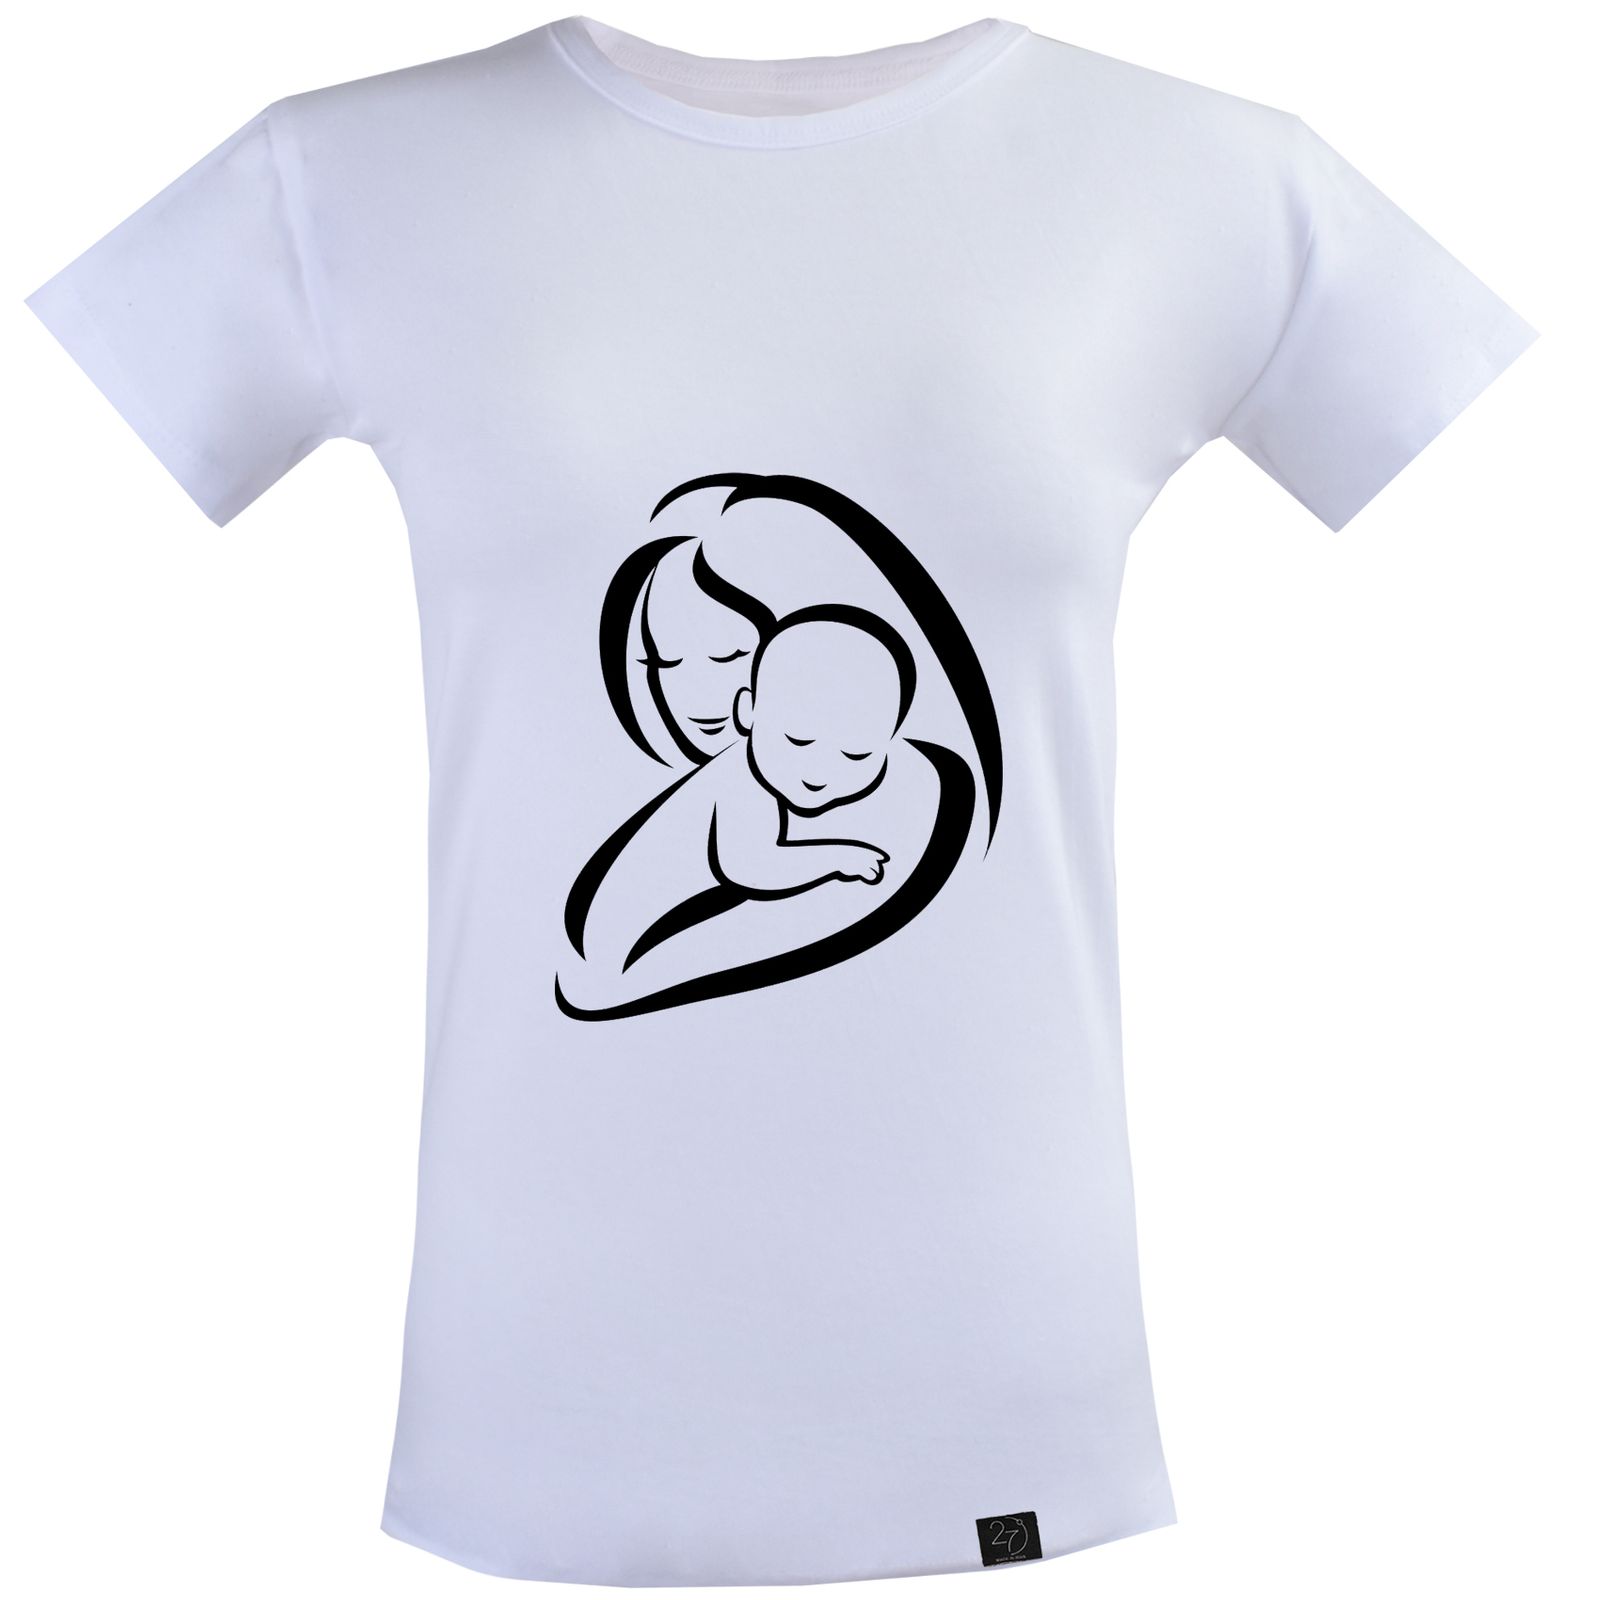 تیشرت زنانه 27 طرح مادر و کودک کد J22 -  - 1